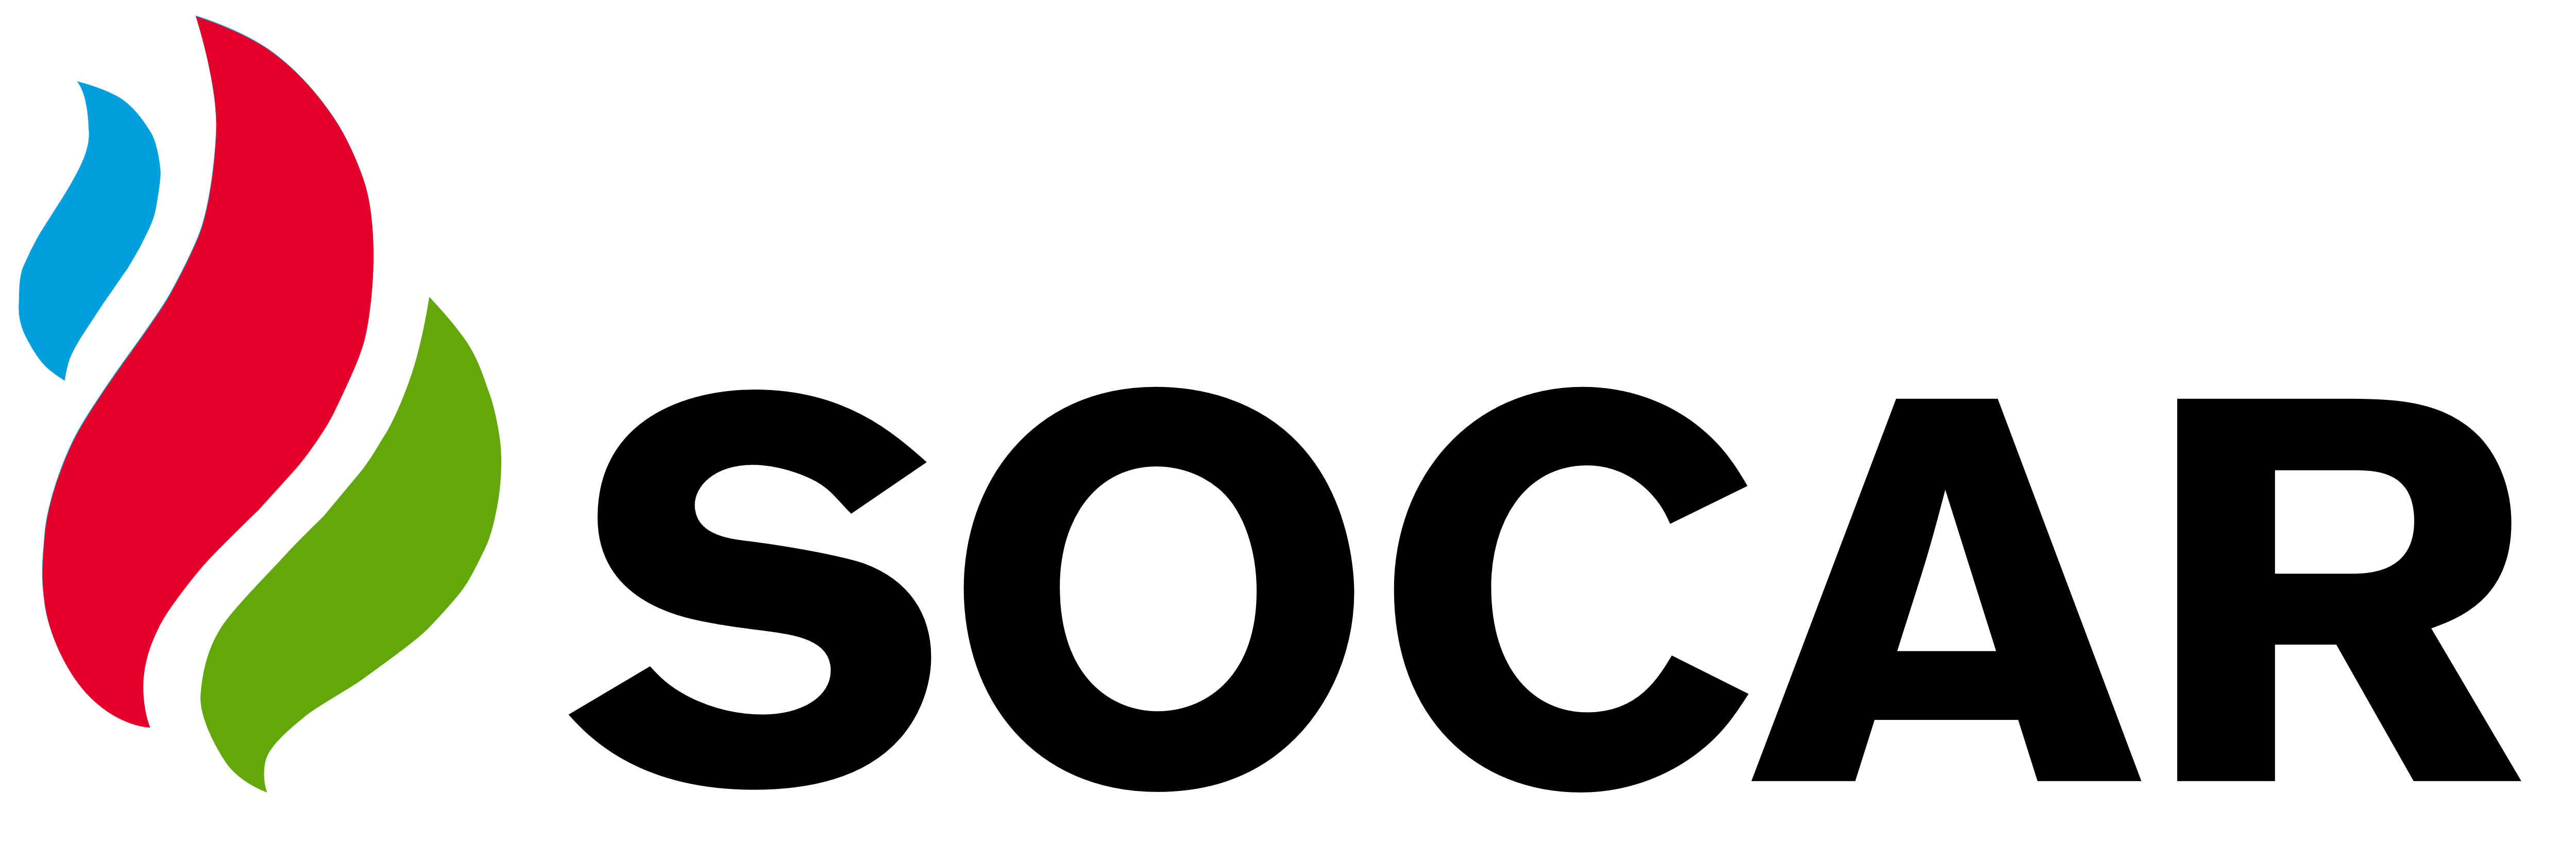 client-socar-logo